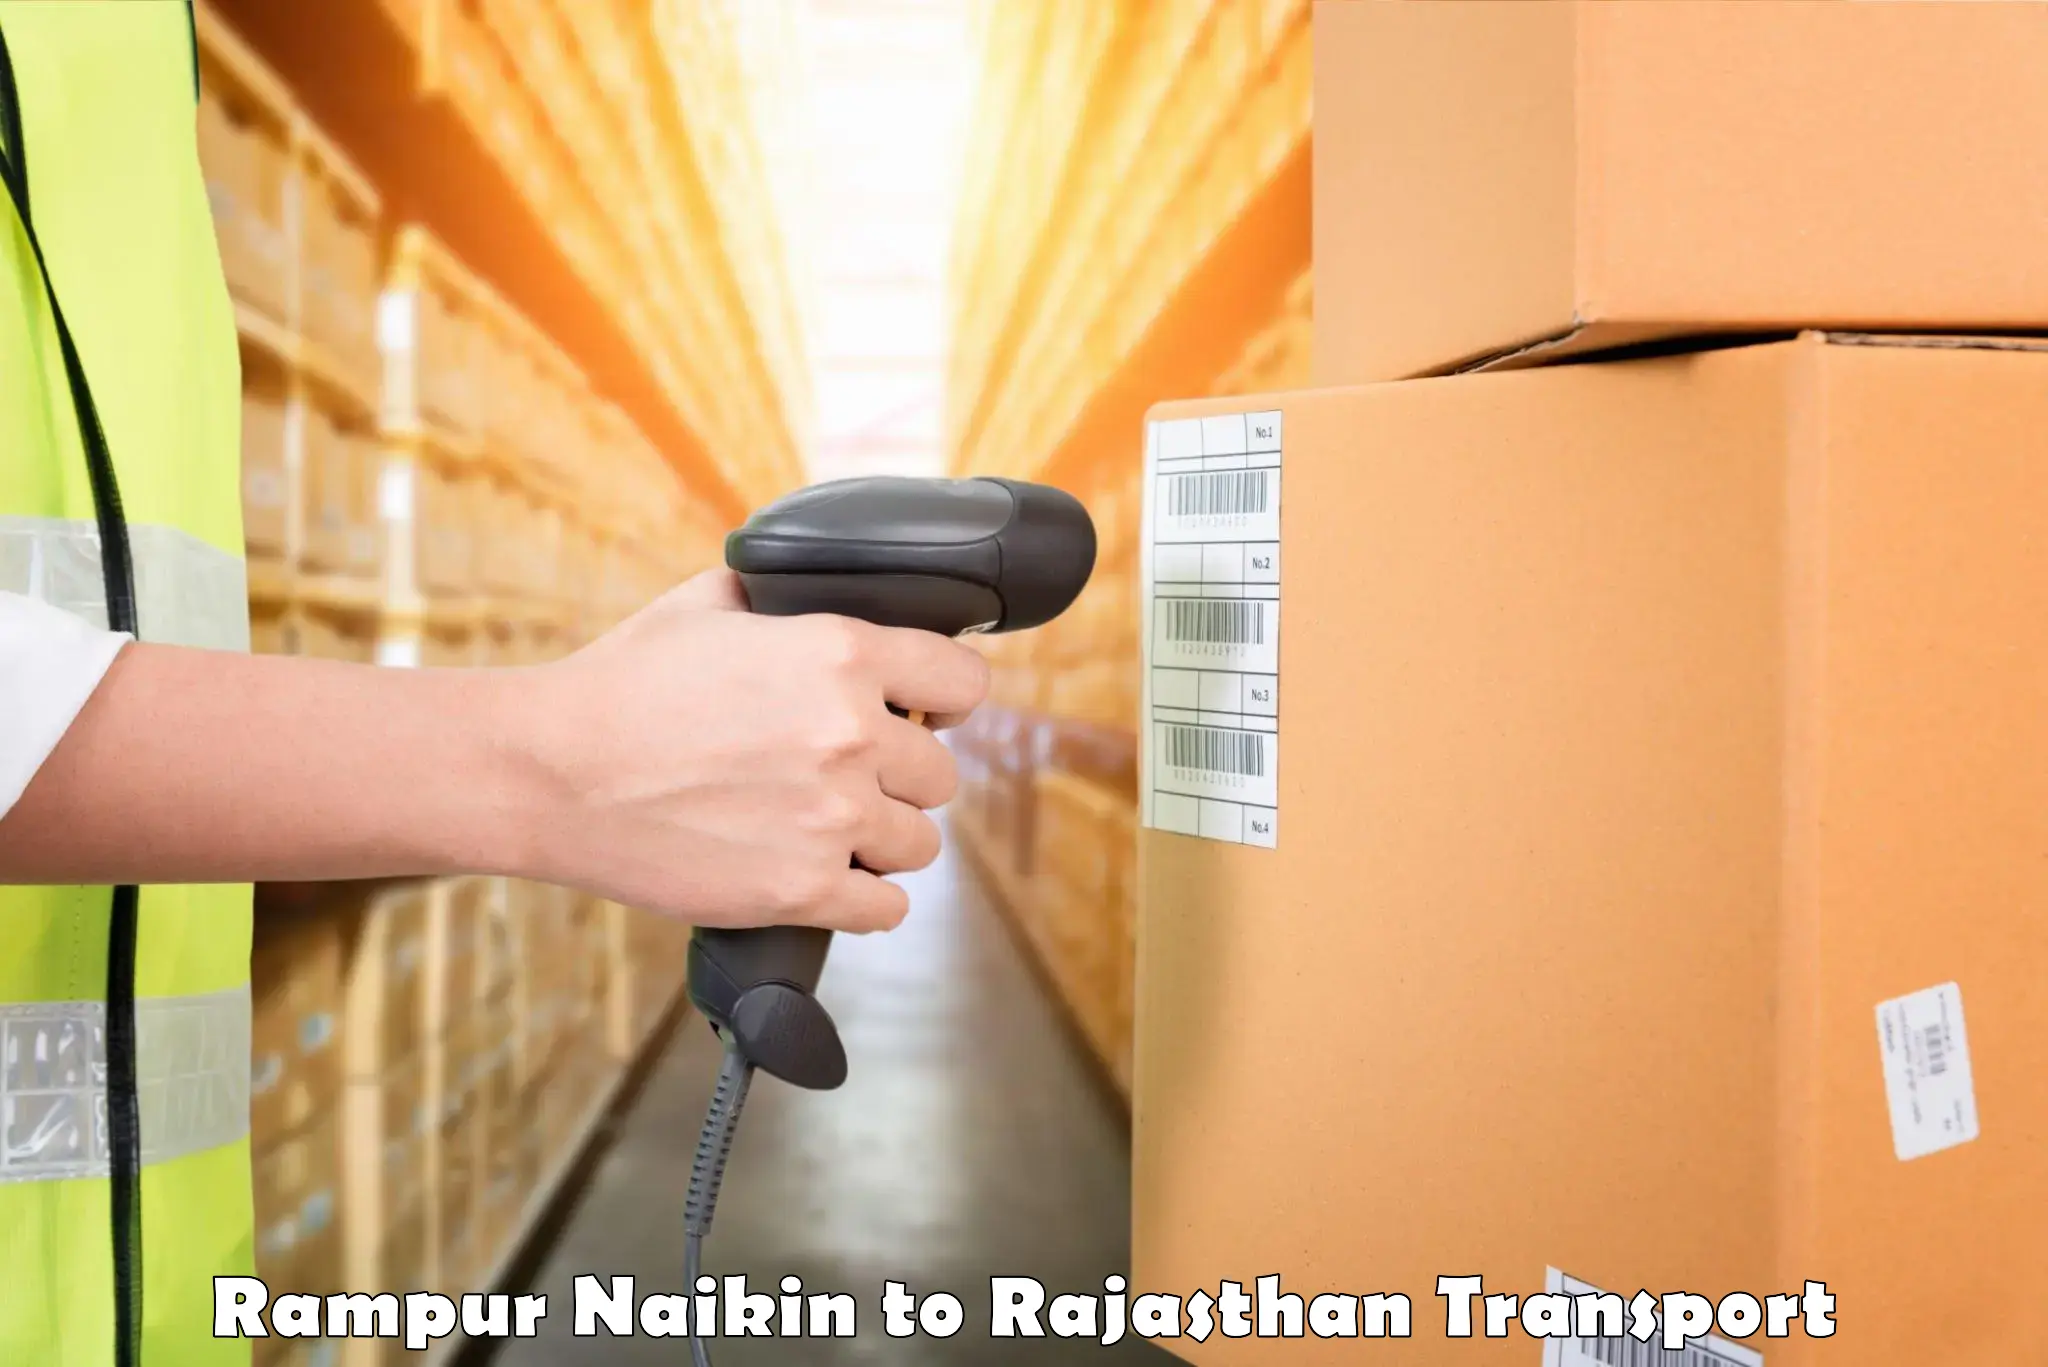 Container transport service Rampur Naikin to Pindwara